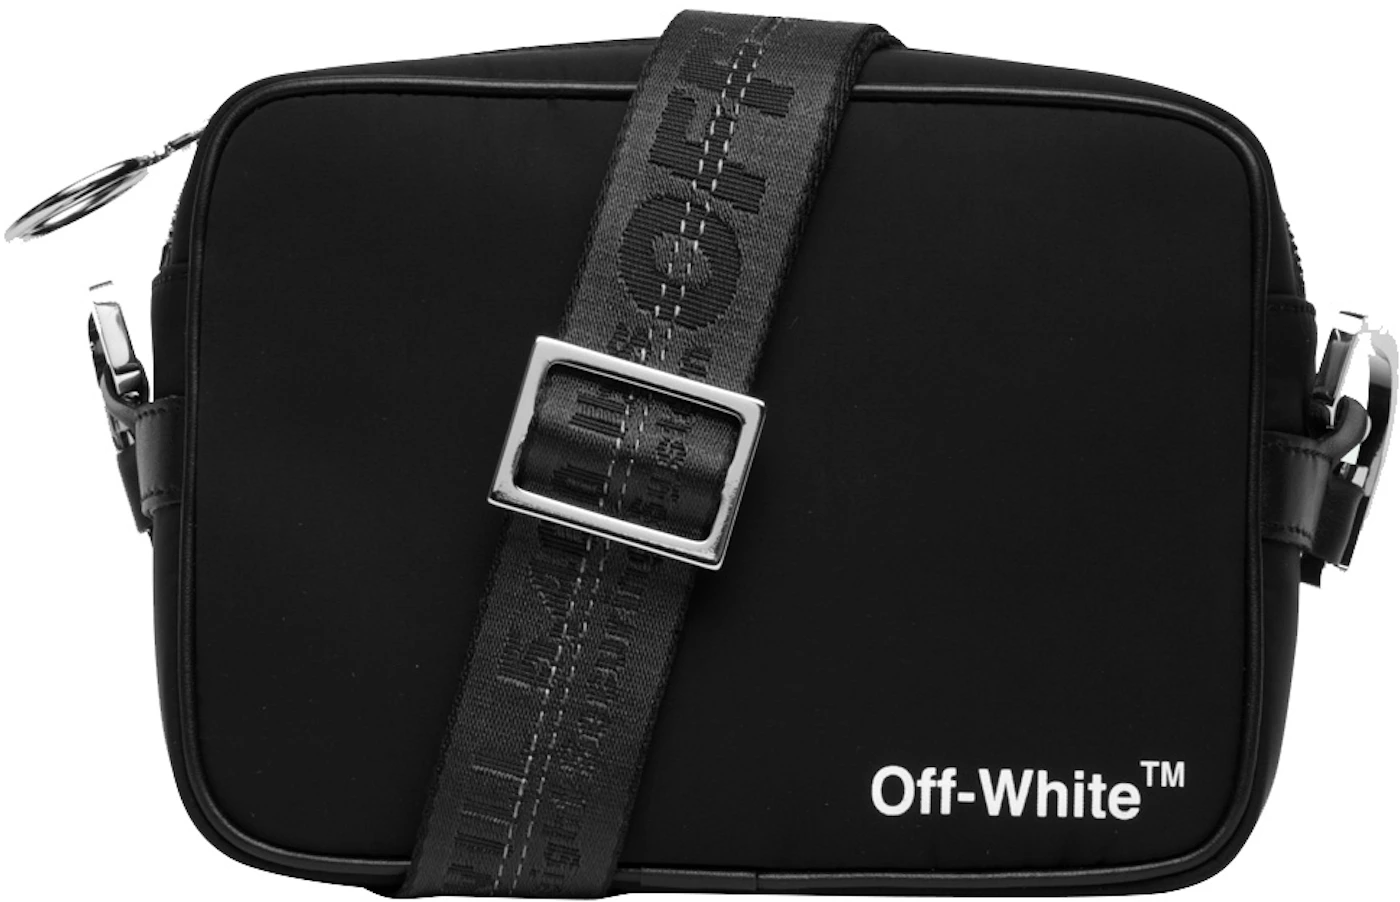 OFF-WHITE Bag Black White retexture 